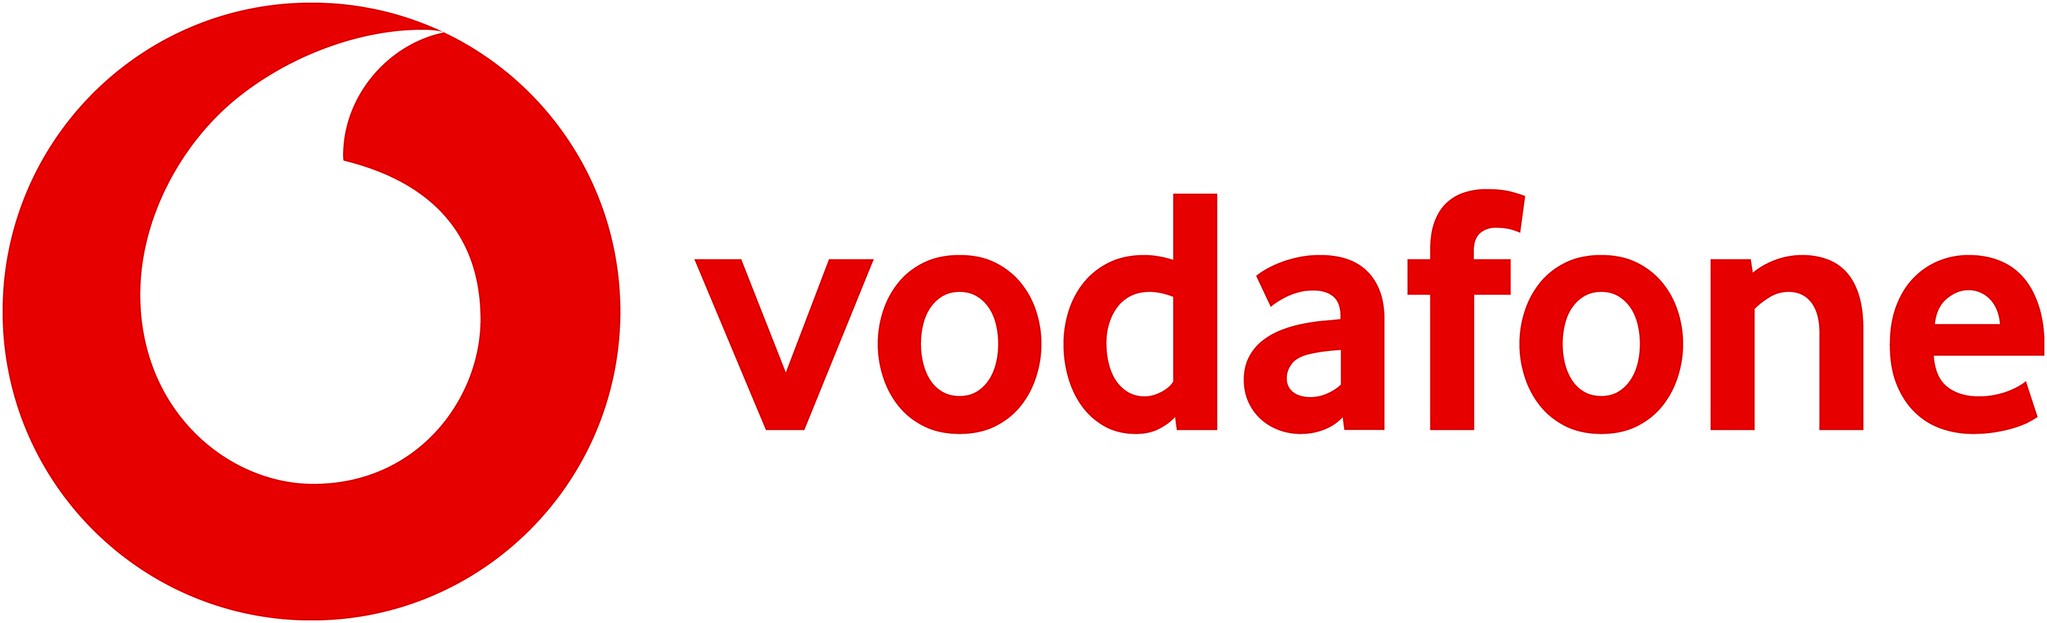 Vodafone berkomitmen untuk meluncurkan teknologi 5G SA di pedesaan Wales